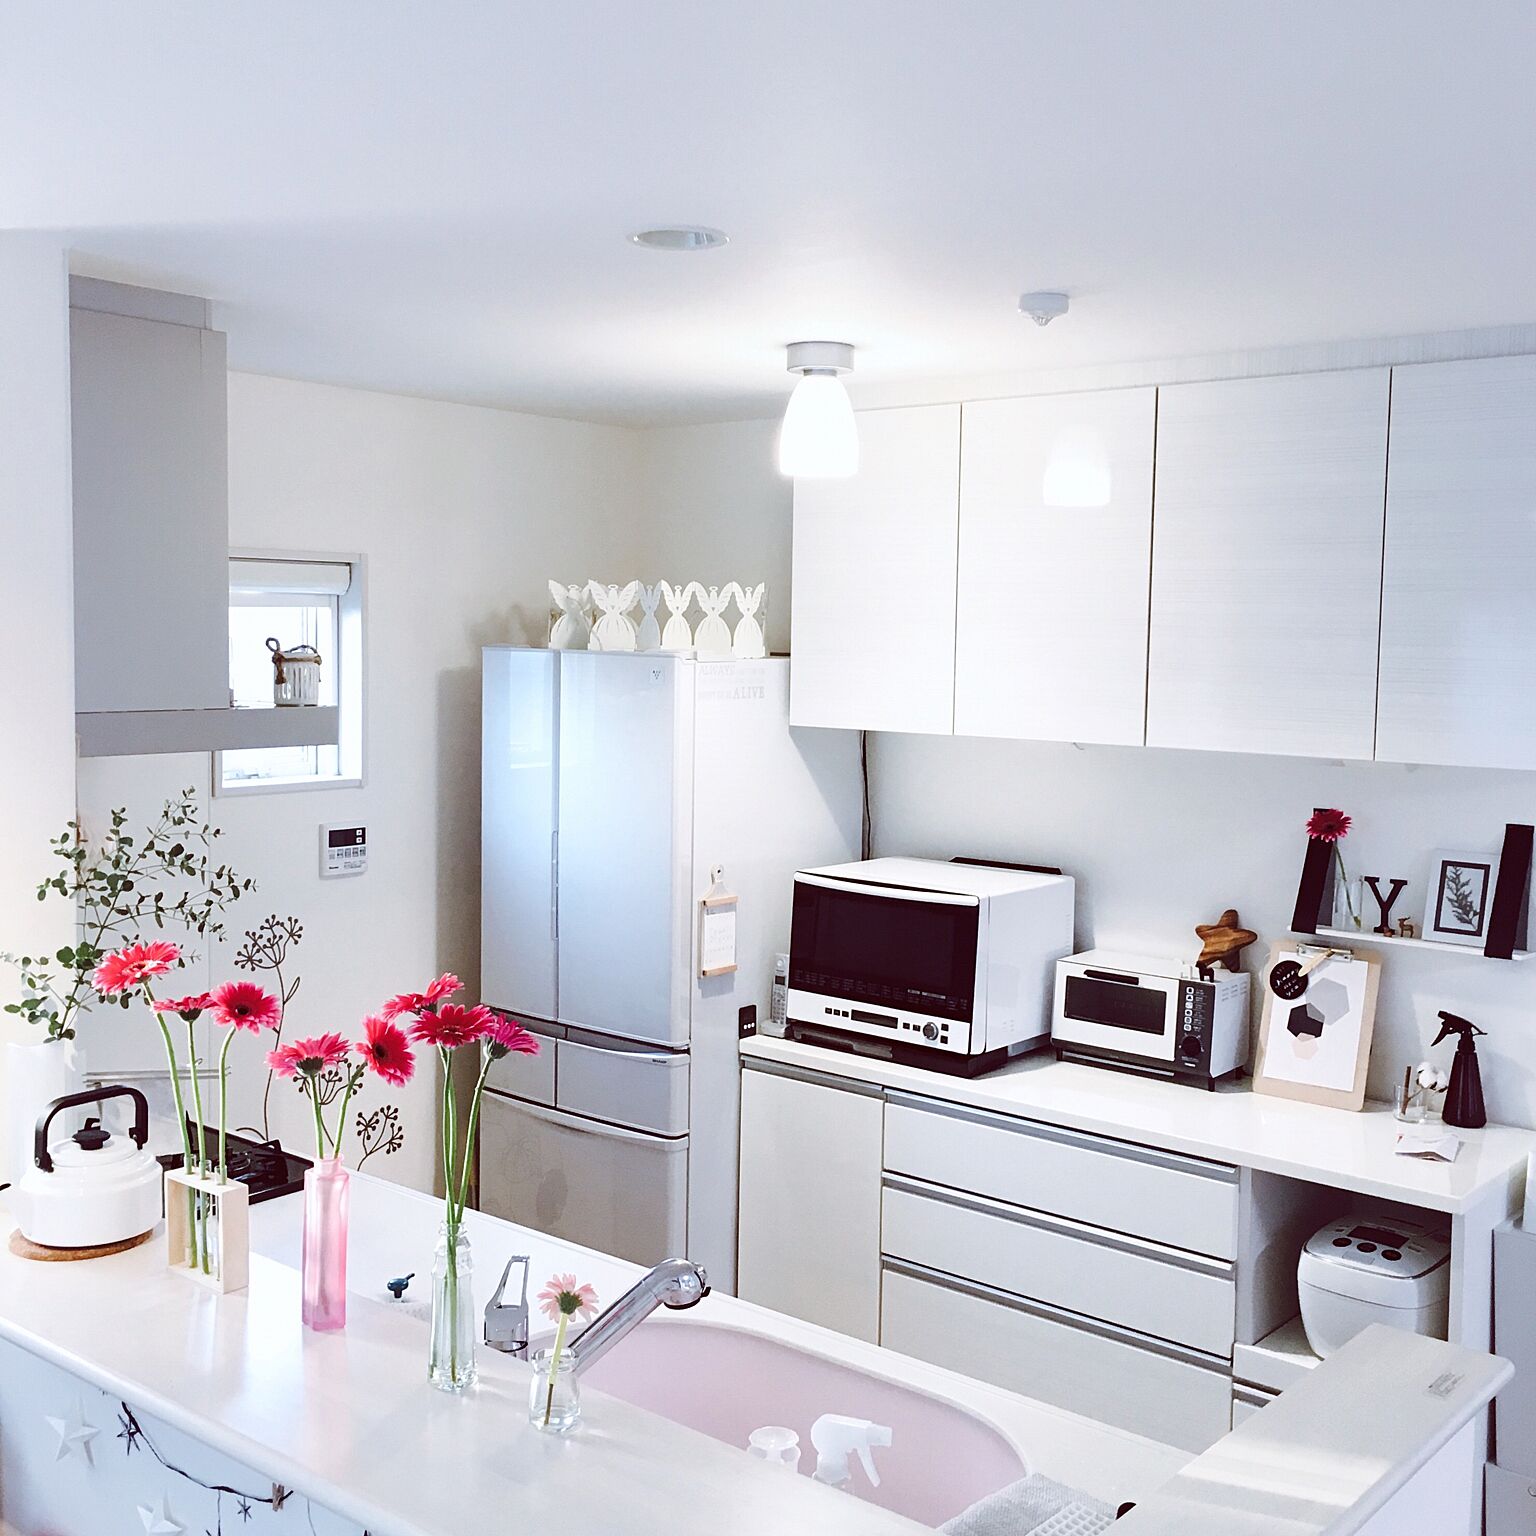 白を基調としたキッチンは清潔感があります。冷蔵庫の上のデコレーションやキッチンカウンターの上の花がかわいいですね。シンプルなだけではなくワンポイントになる飾りがあるとおしゃれです。